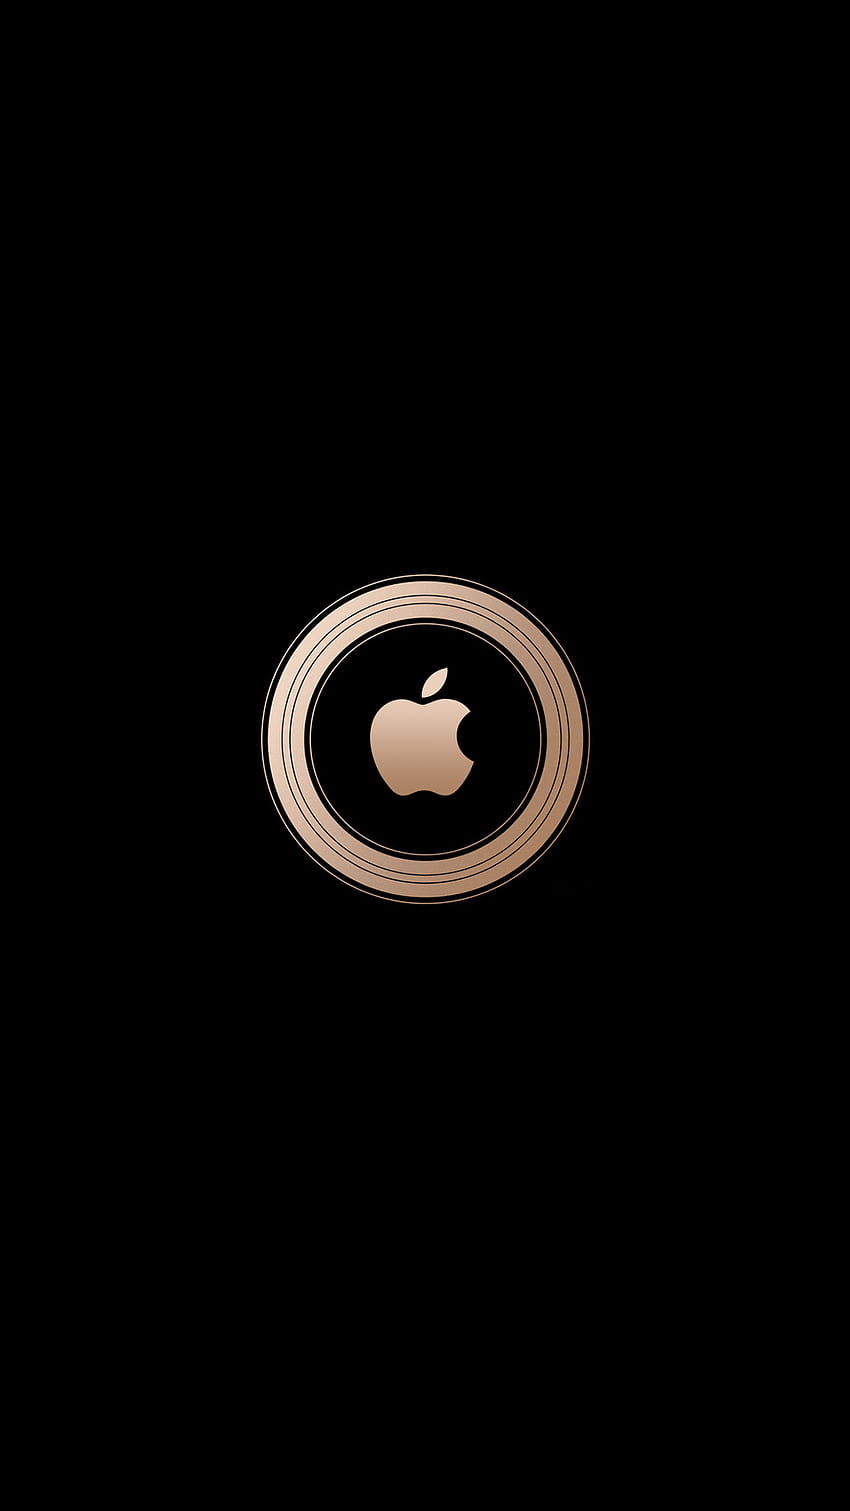 Reúnase alrededor del evento de Apple, logotipo de iPhone dorado fondo de pantalla del teléfono